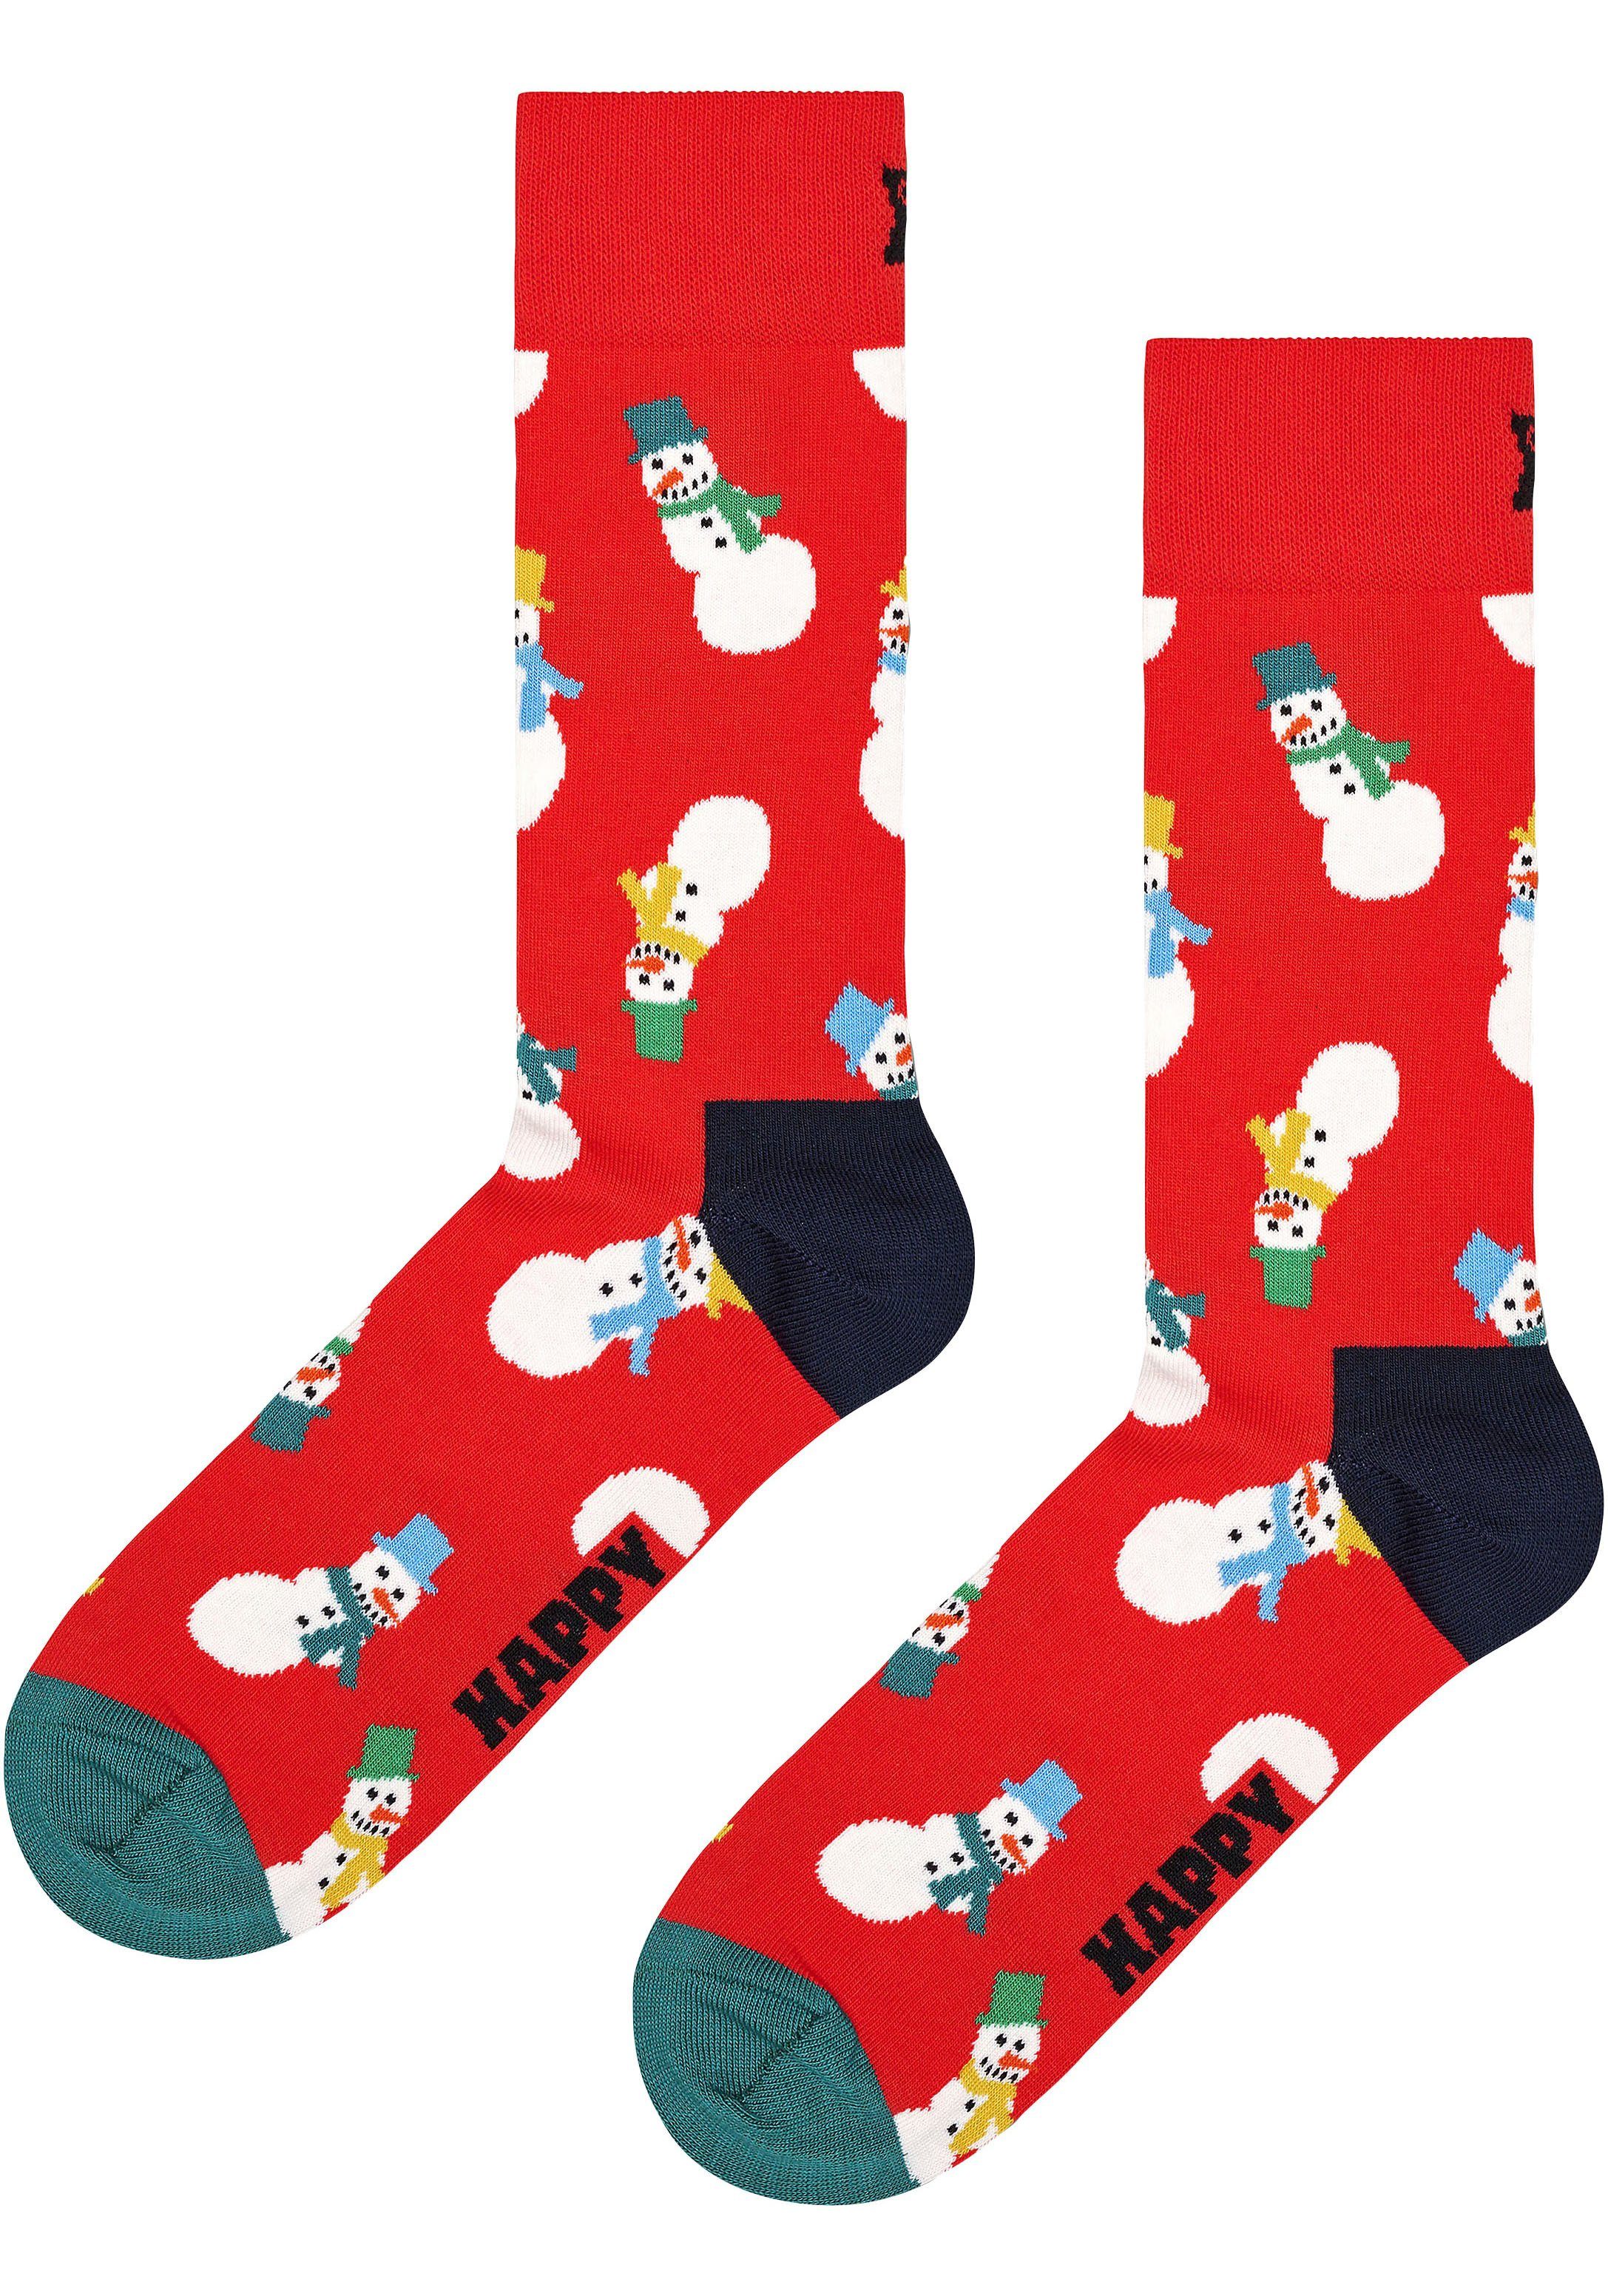 2 Snowman Happy Snowman Socken Gift Socks (3-Paar) Box